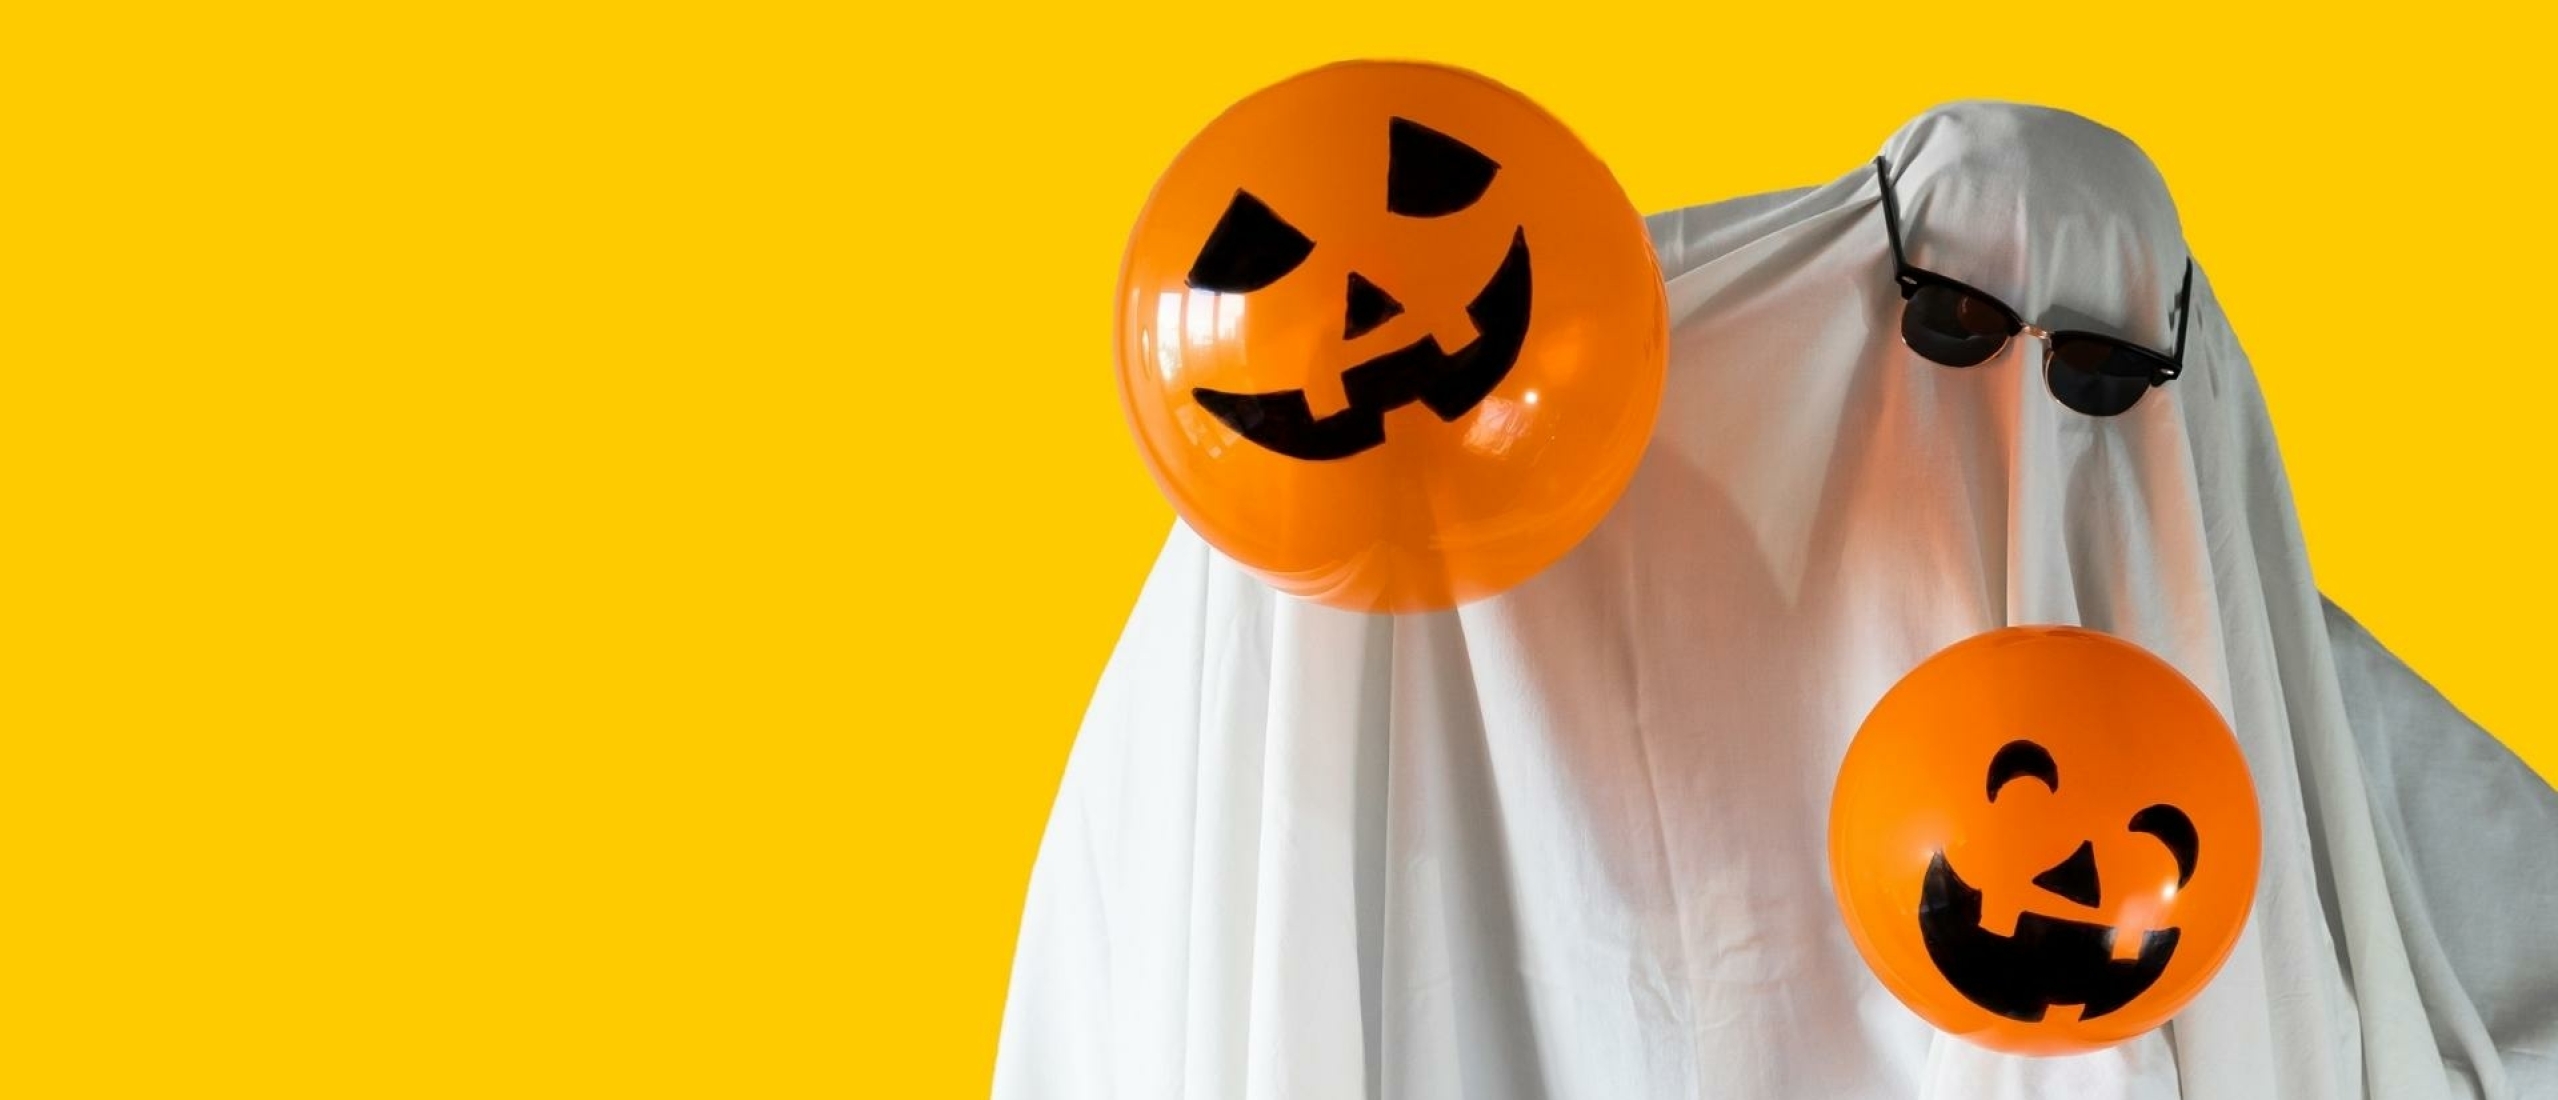 De ultieme halloween kostuum tips: Griezelig goed gekleed!